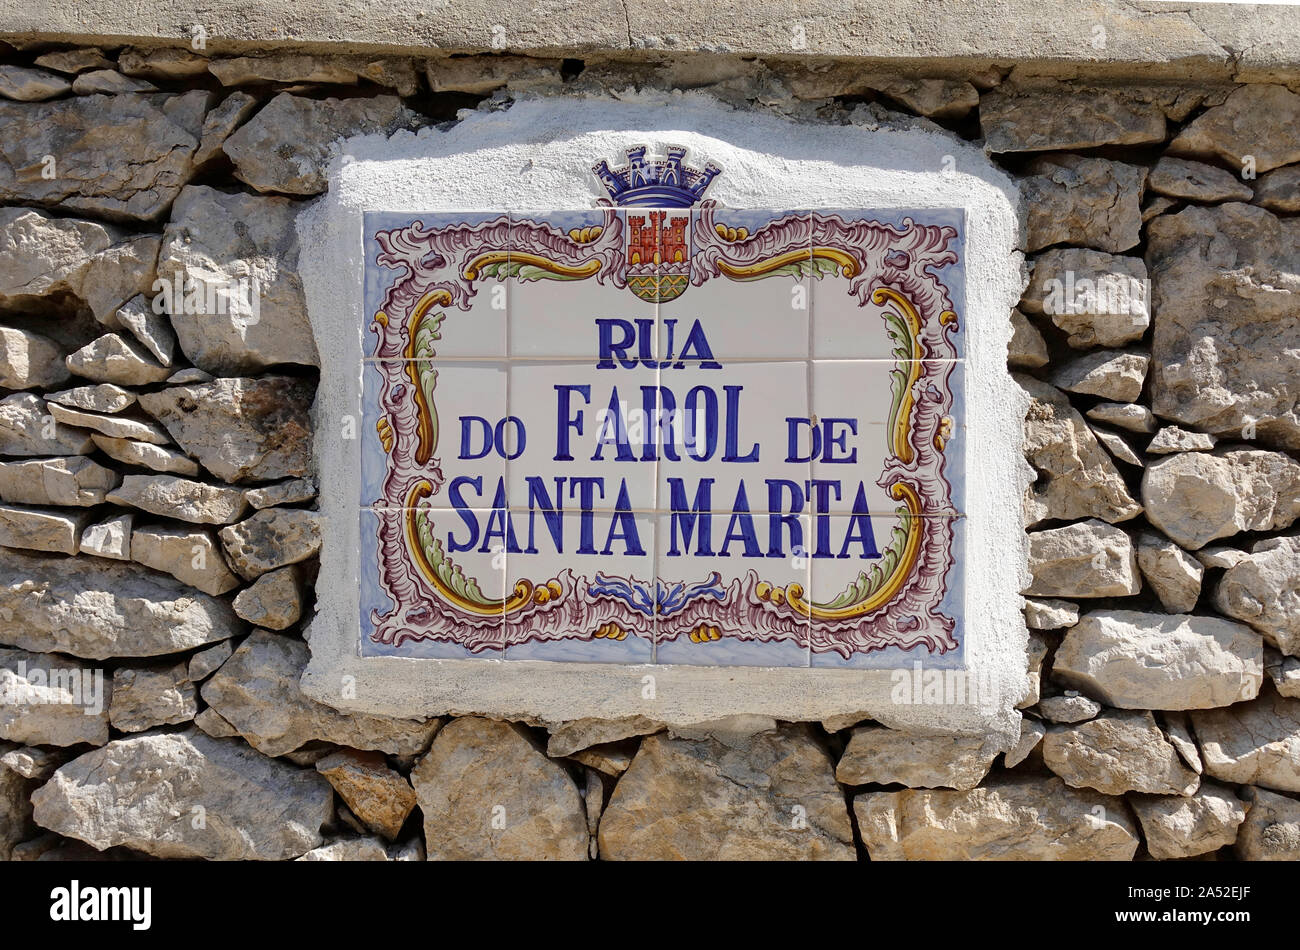 Portoghese tradizionale Gres Porcellanato strada segno in Cascais Portogallo per una strada chiamata "Rua Do Farol De Santa Marta" Foto Stock